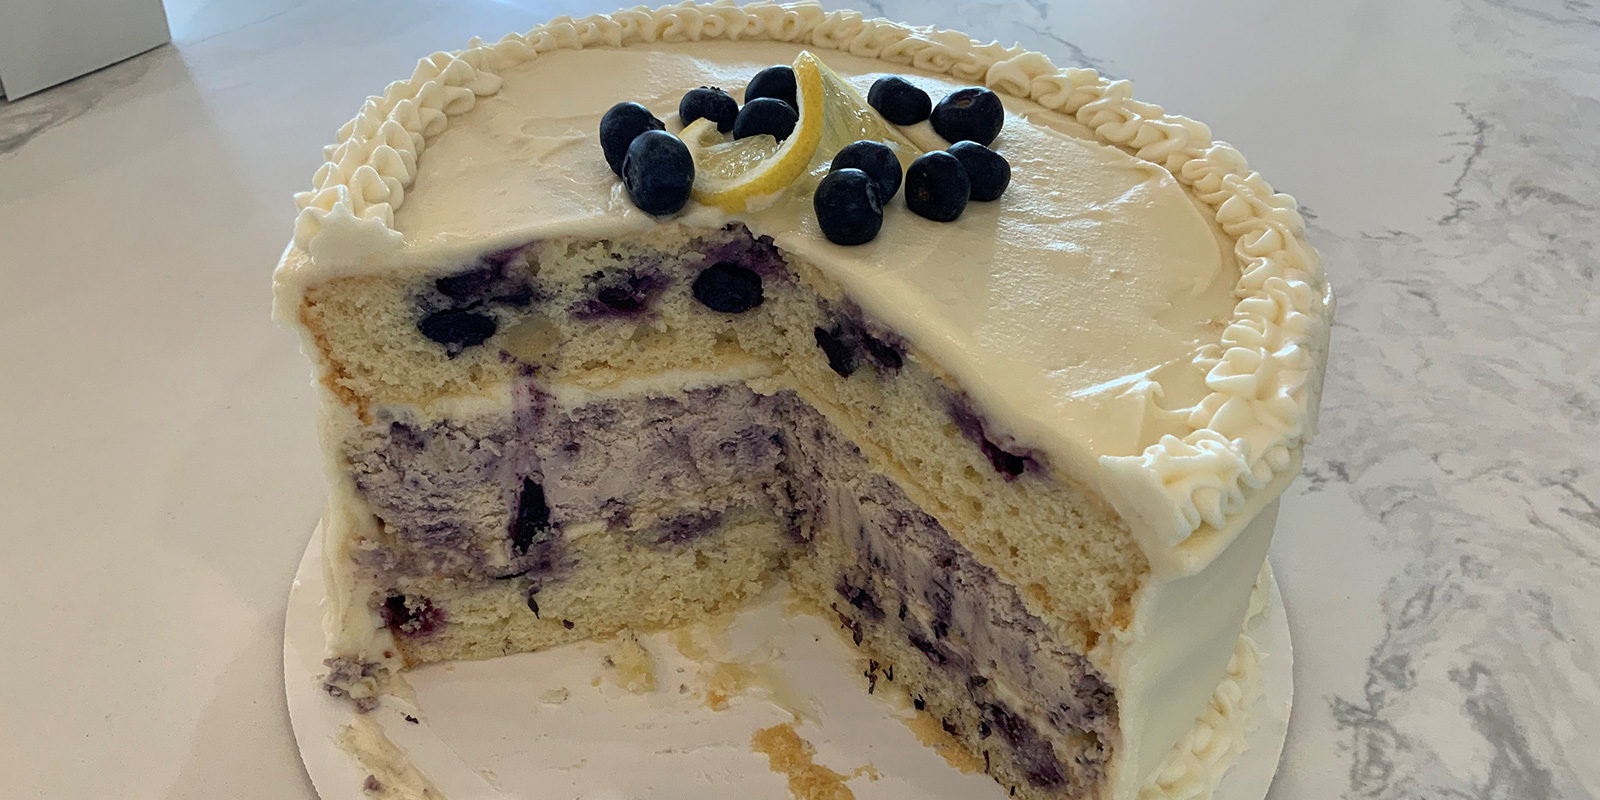 blueberry cake 'n cheesecake